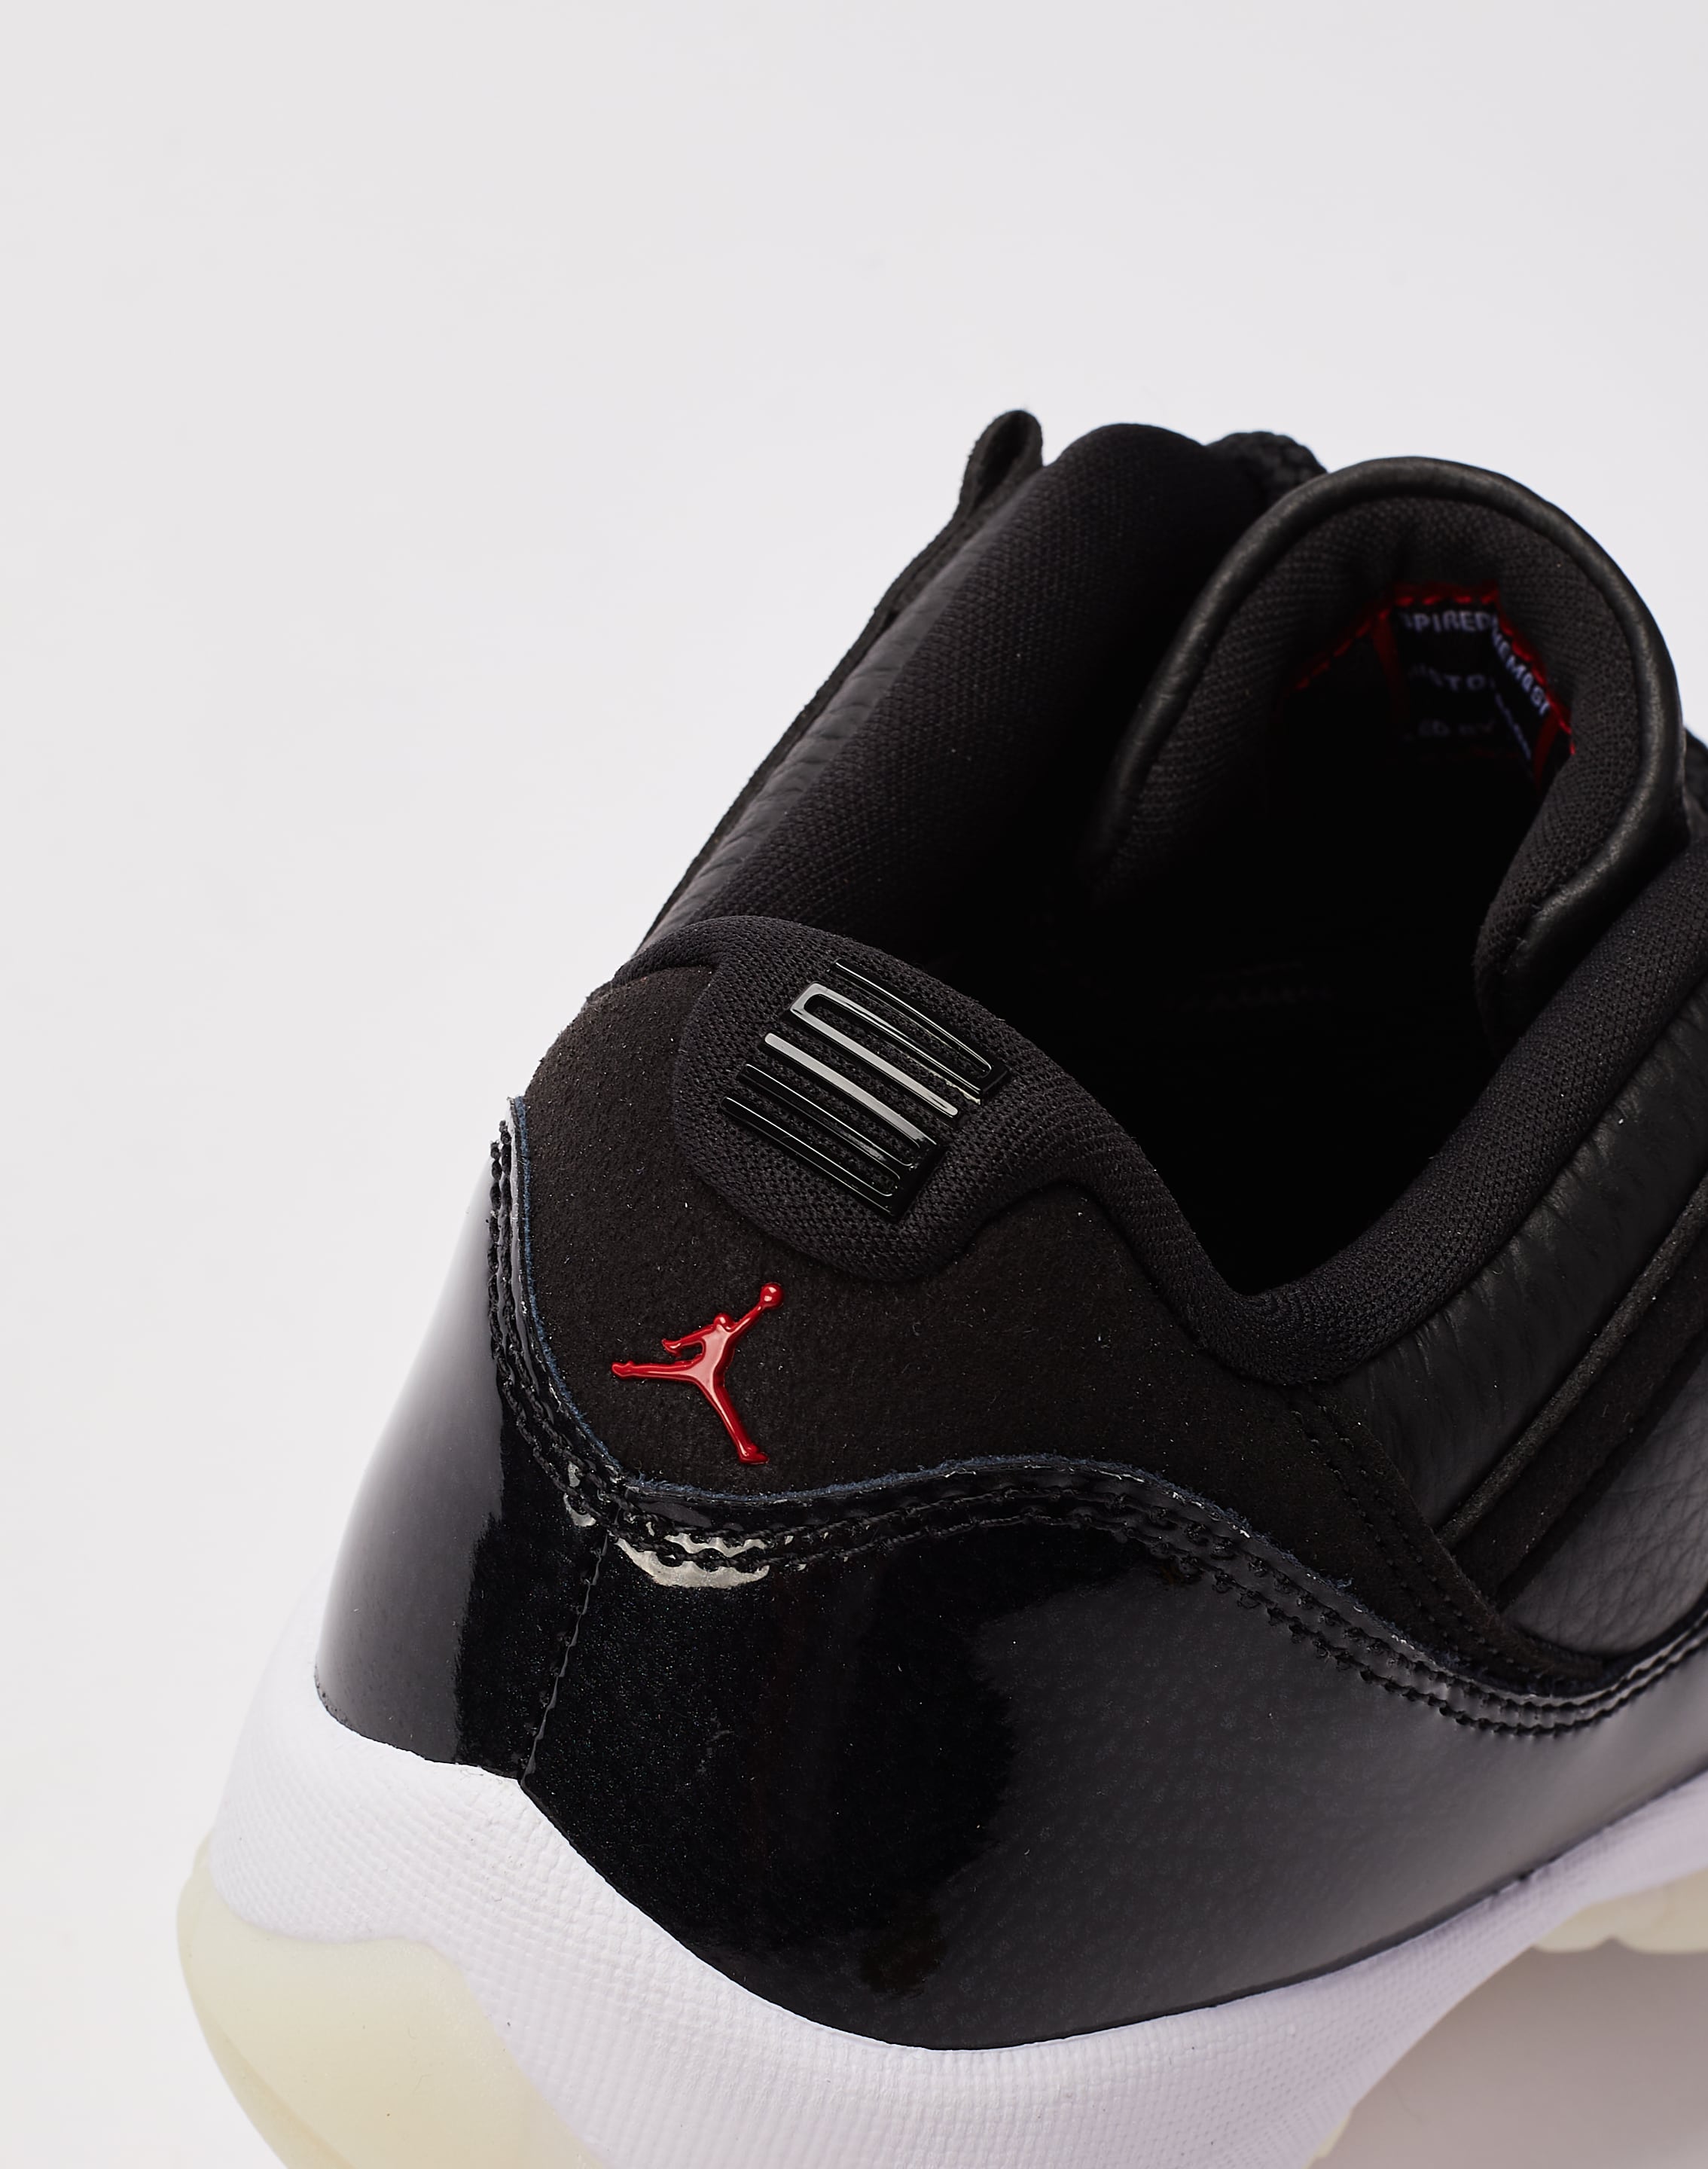 Jordan Air Jordan 11 Retro Low 72-10 Grade School Lifestyle Shoes